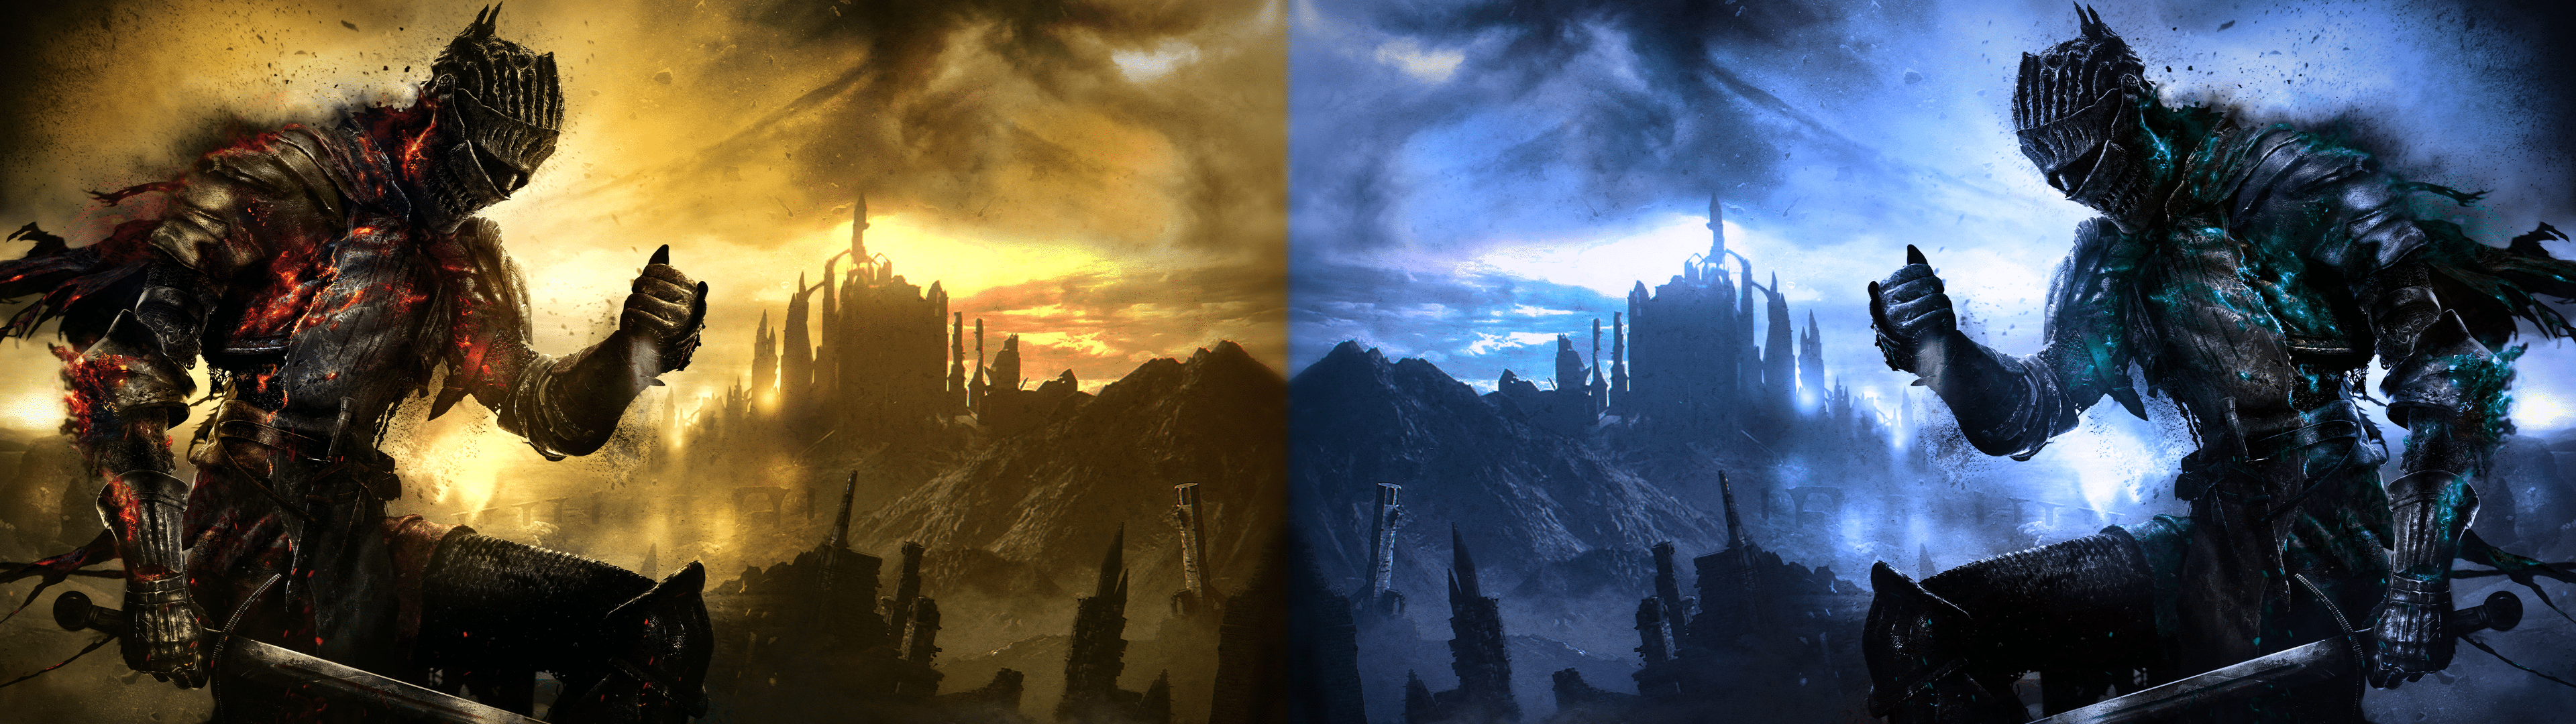 Dark Souls Dual Screen Wallpapers - Top Free Dark Souls Dual Screen  Backgrounds - WallpaperAccess